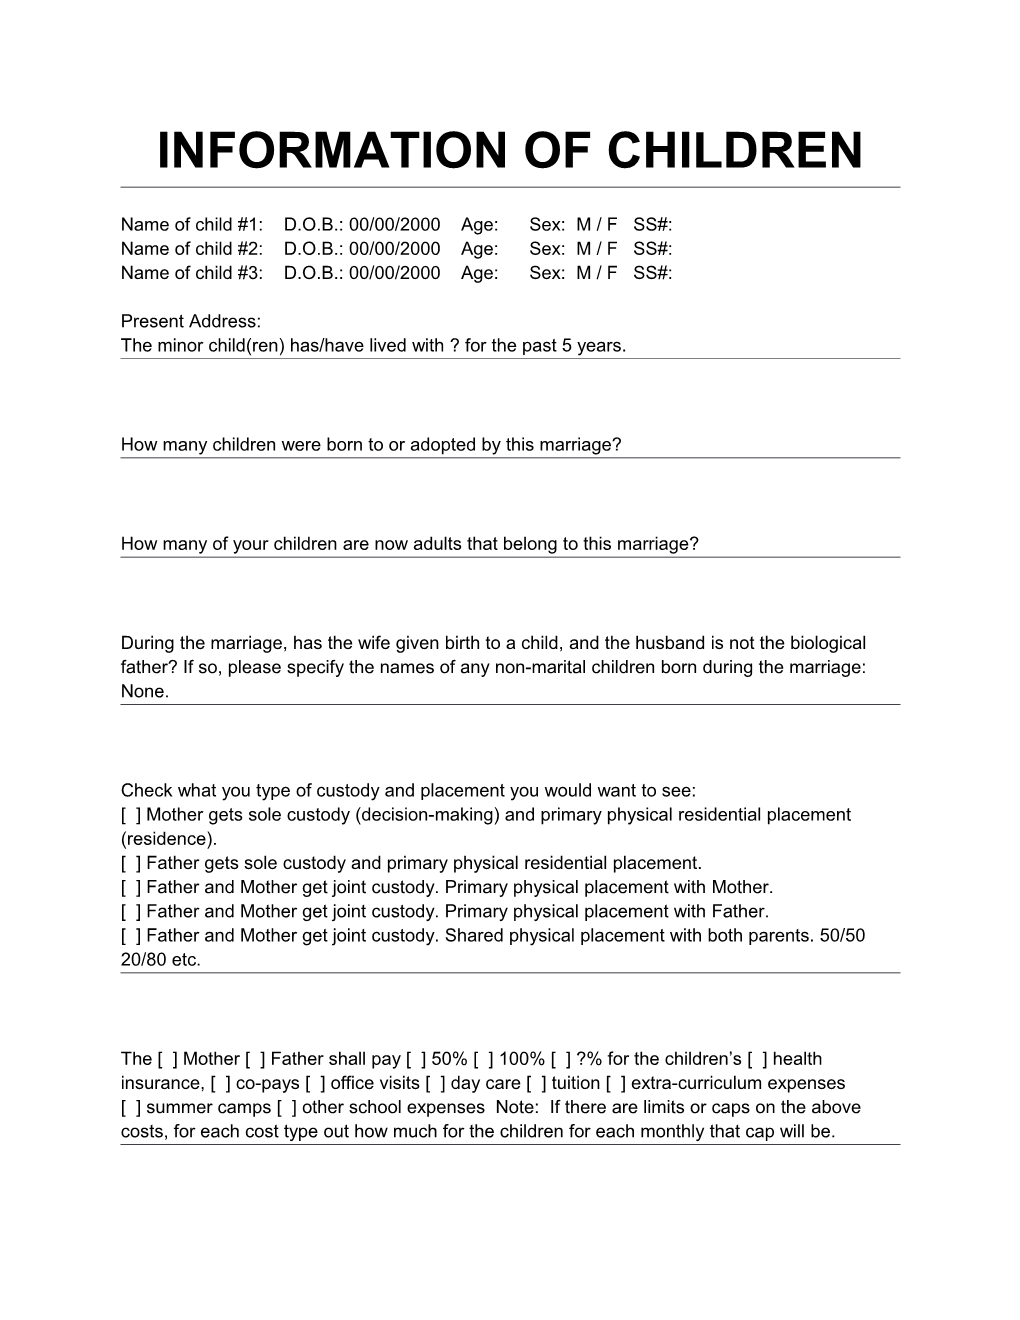 Information of Children